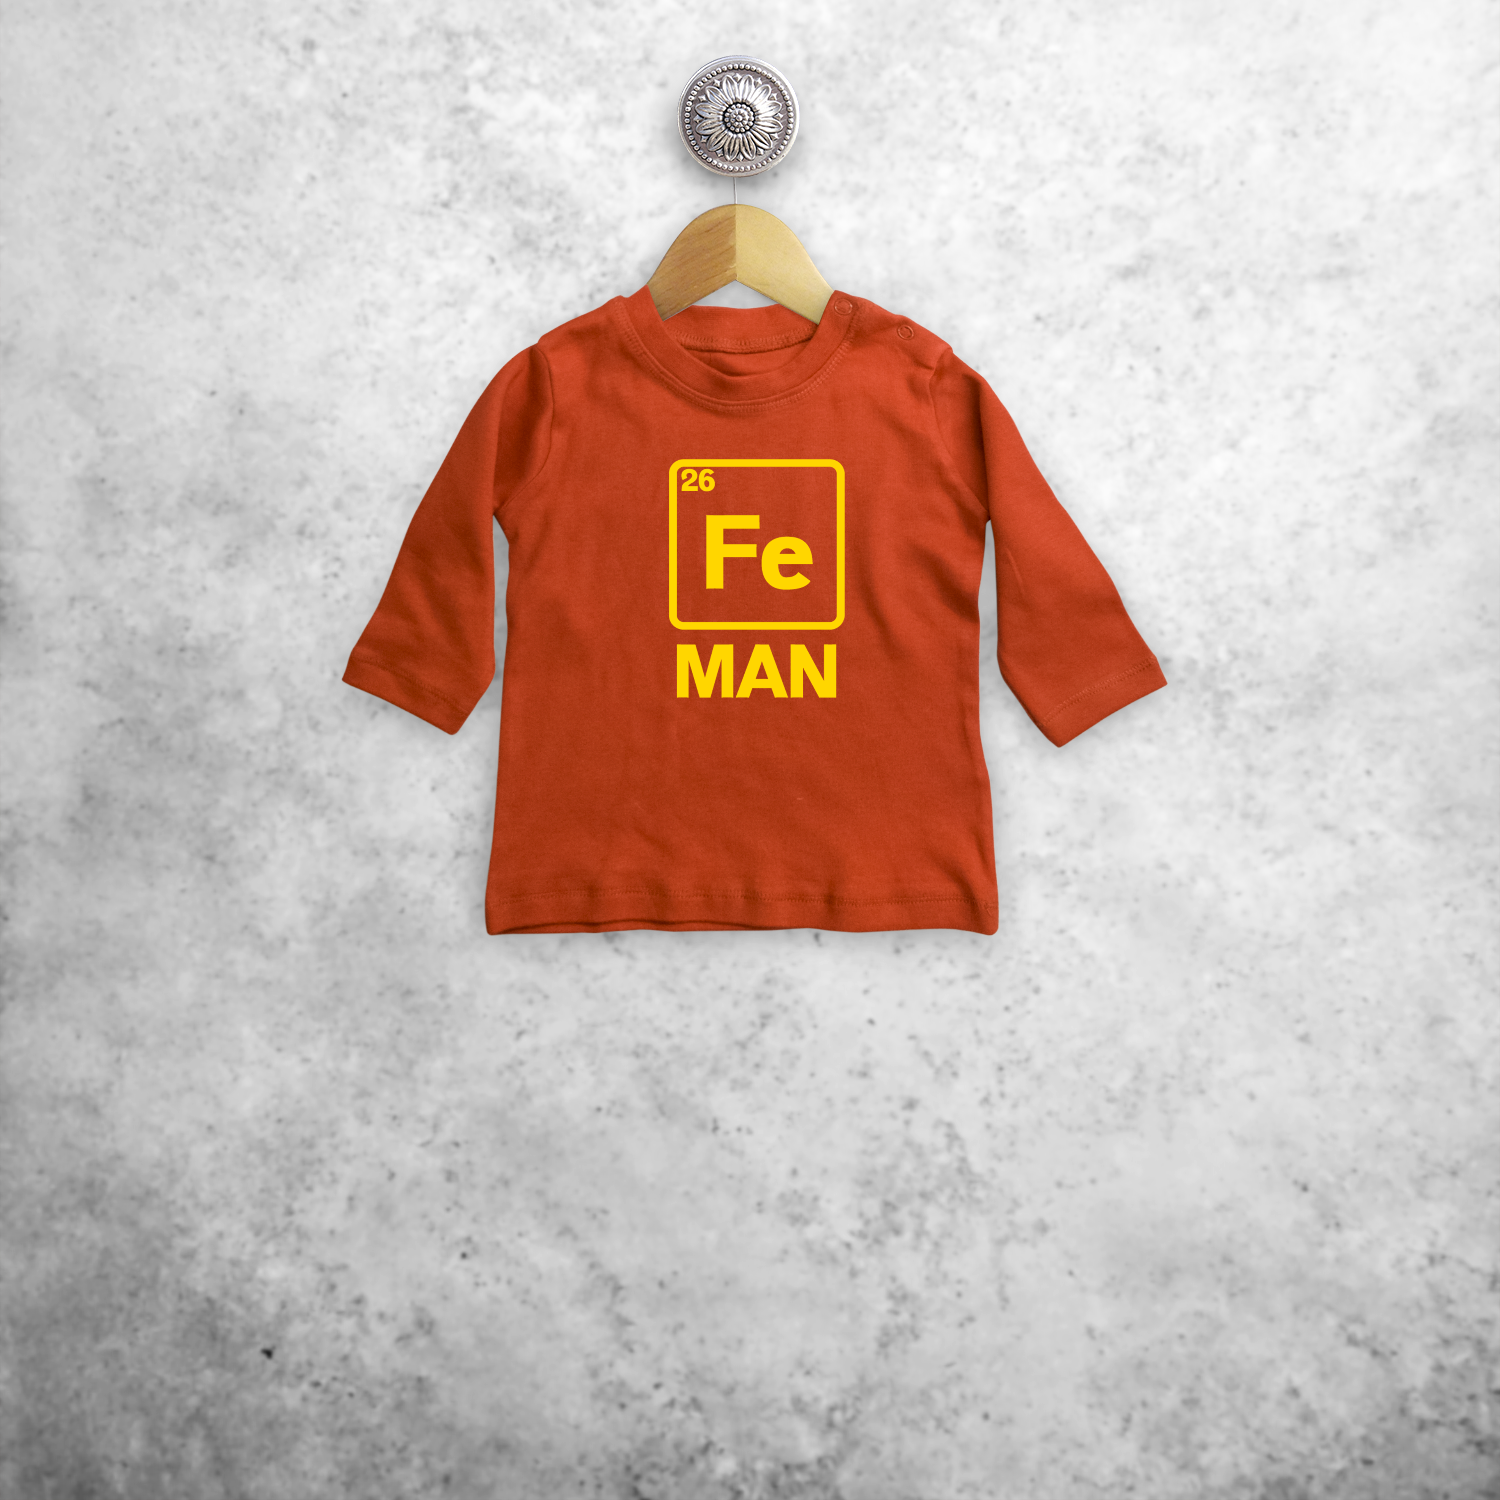 'Fe man' baby longsleeve shirt